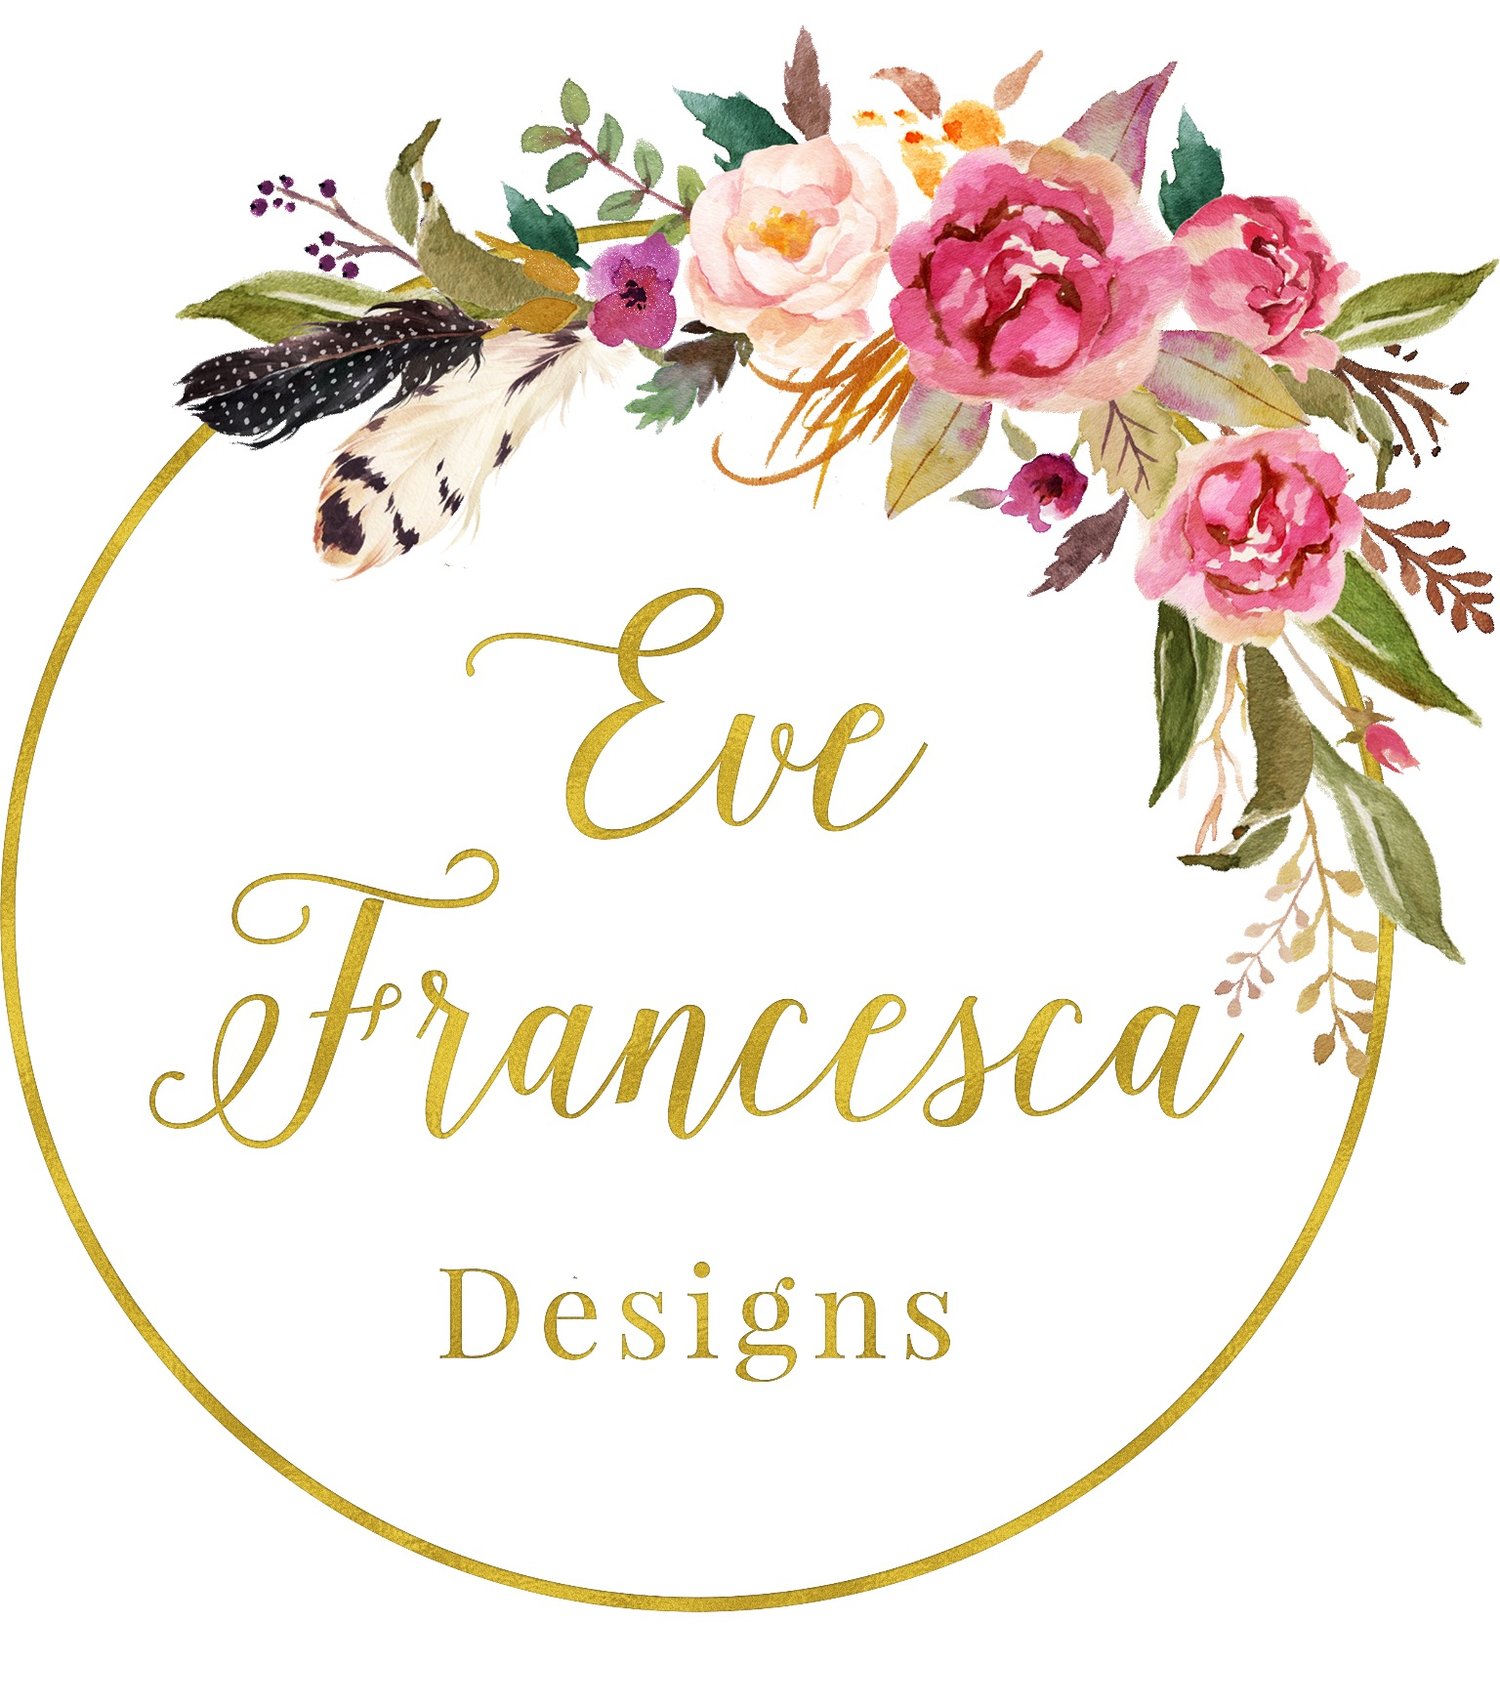 Eve Francesca Designs